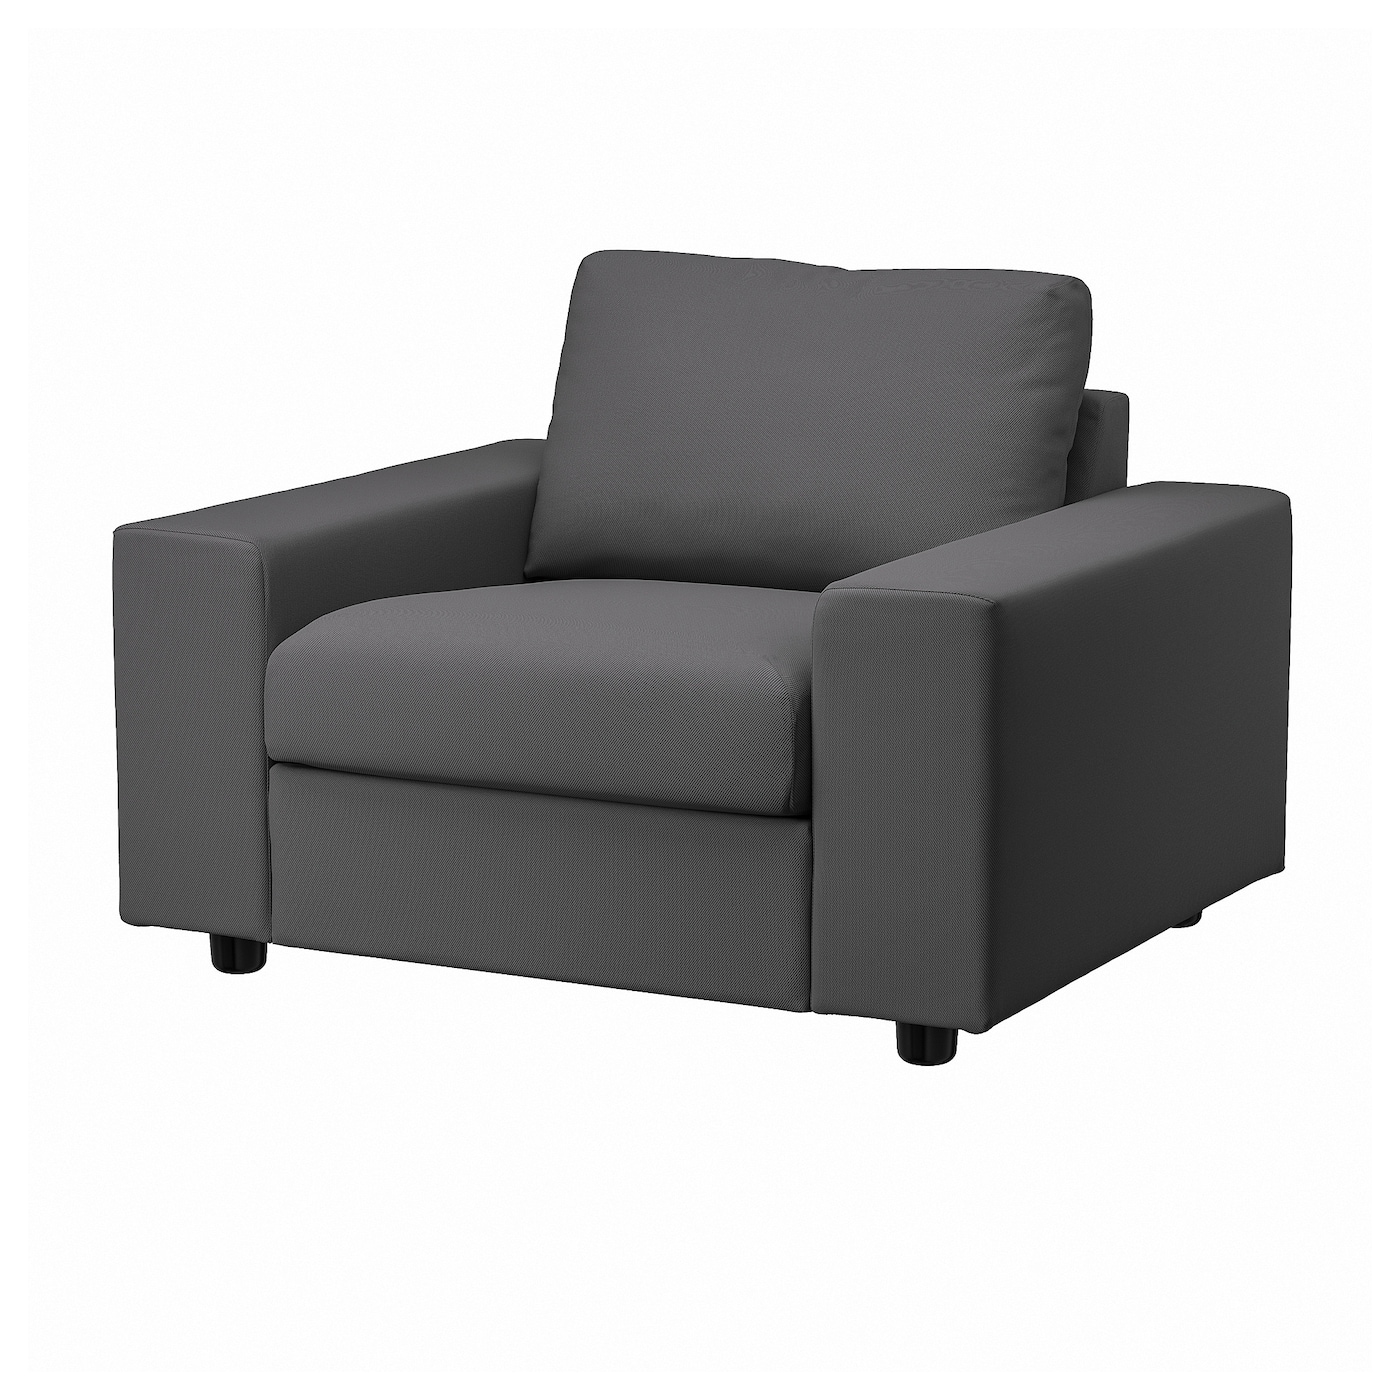 ВИМЛЕ Кресло, с широкими подлокотниками/Халларп серый VIMLE IKEA кресло мягкое тутси скорость серый модель детство